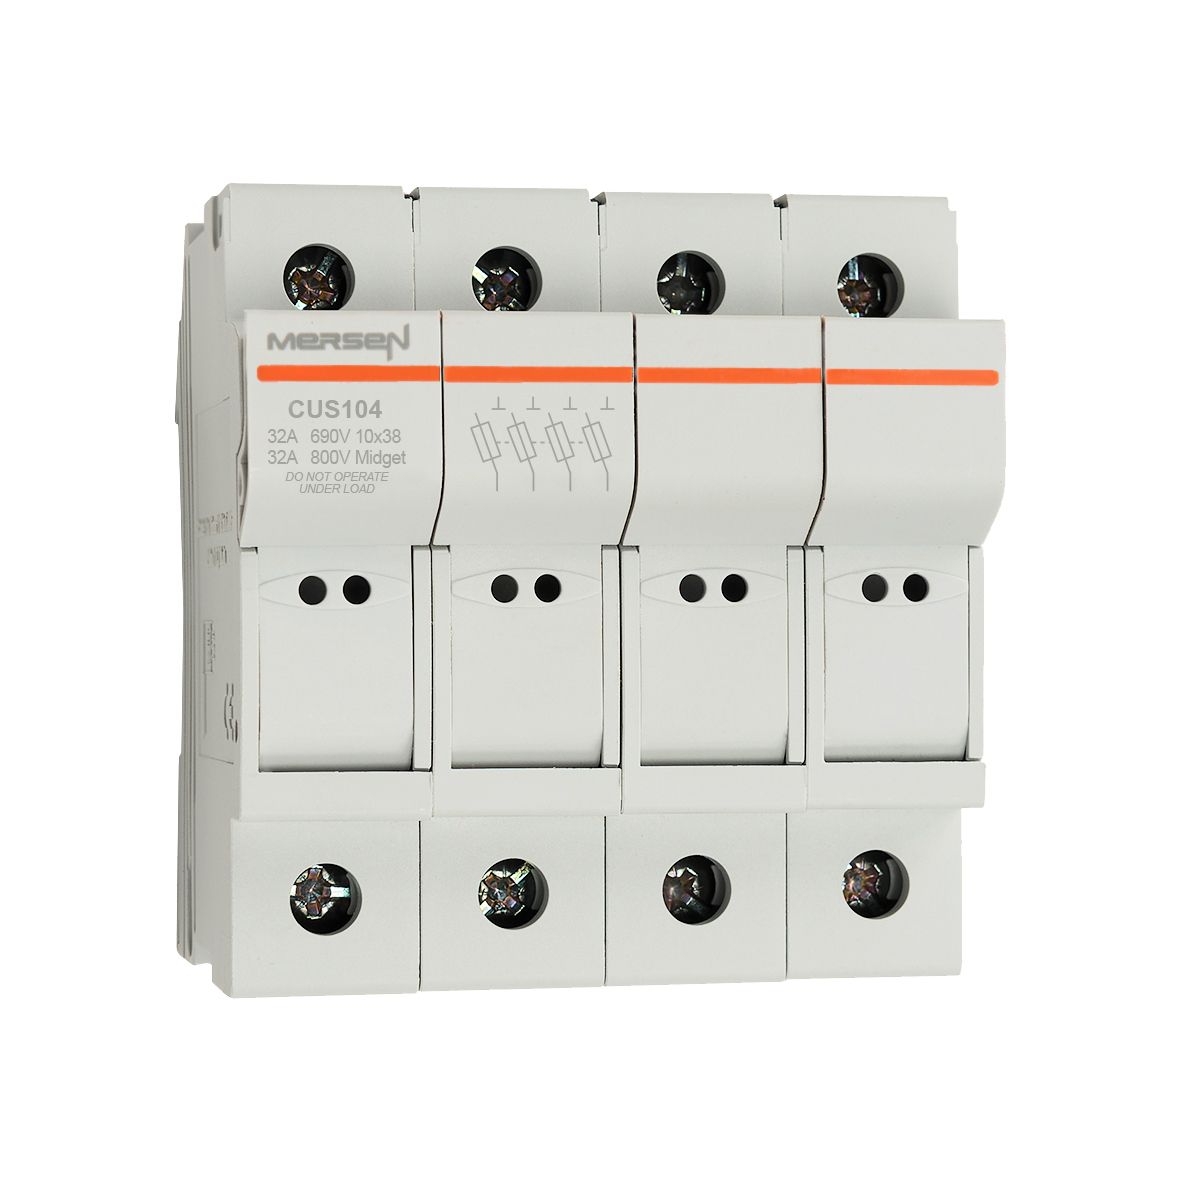 X1062712 - modular fuse holder, UL+IEC, 4P, 10x38, MIDGET, DIN rail mounting, IP20